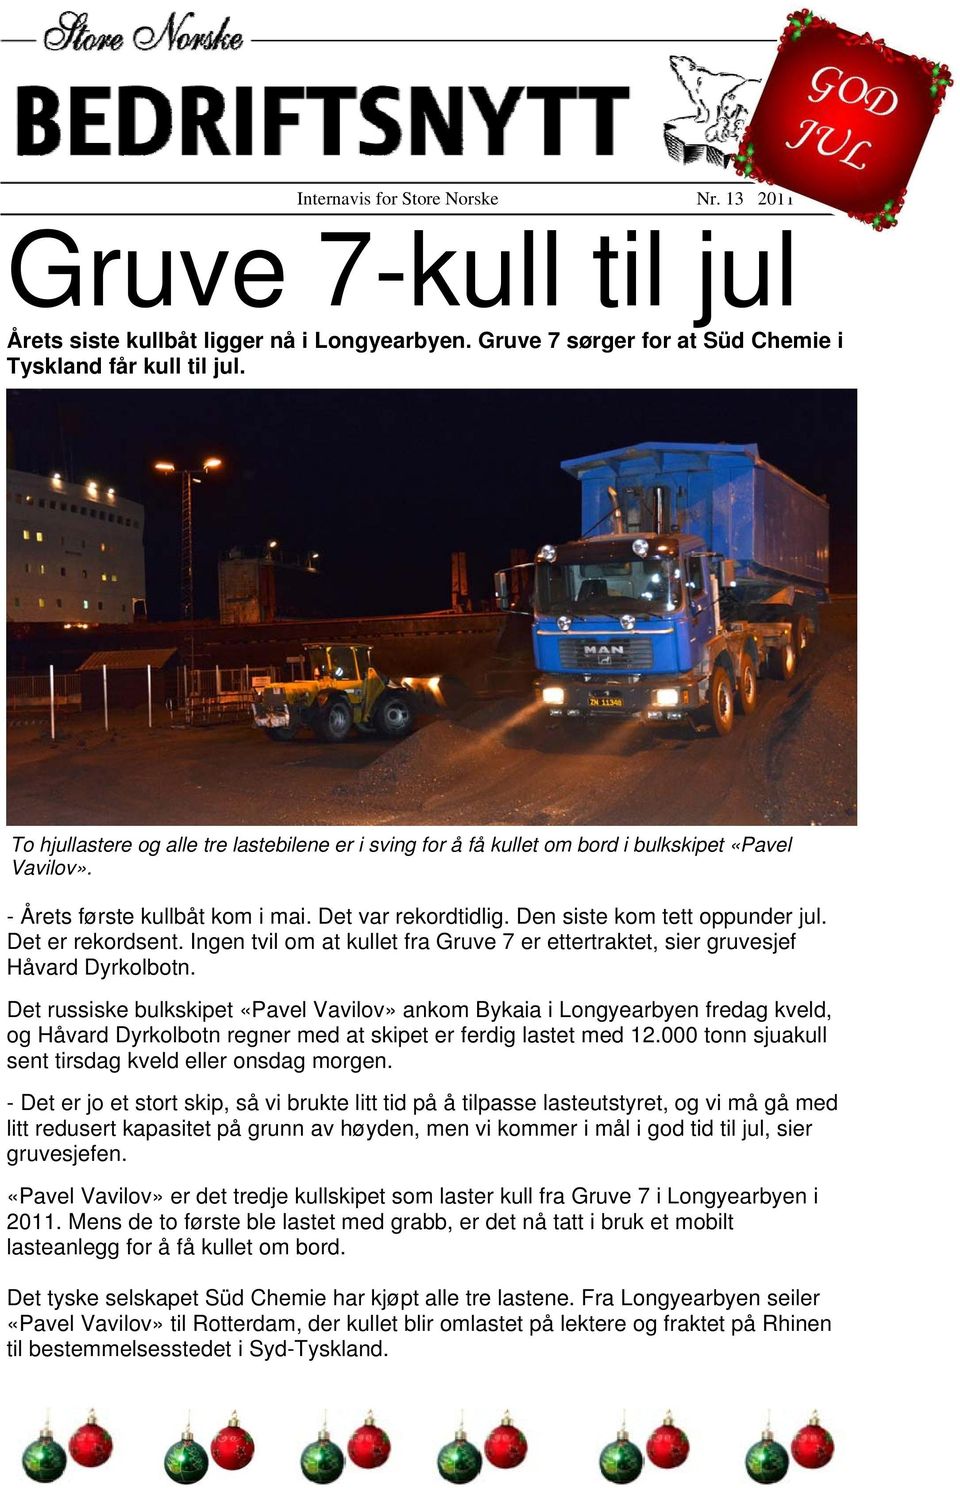 Det er rekordsent. Ingen tvil om at kullet fra Gruve 7 er ettertraktet, sier gruvesjef Håvard Dyrkolbotn.